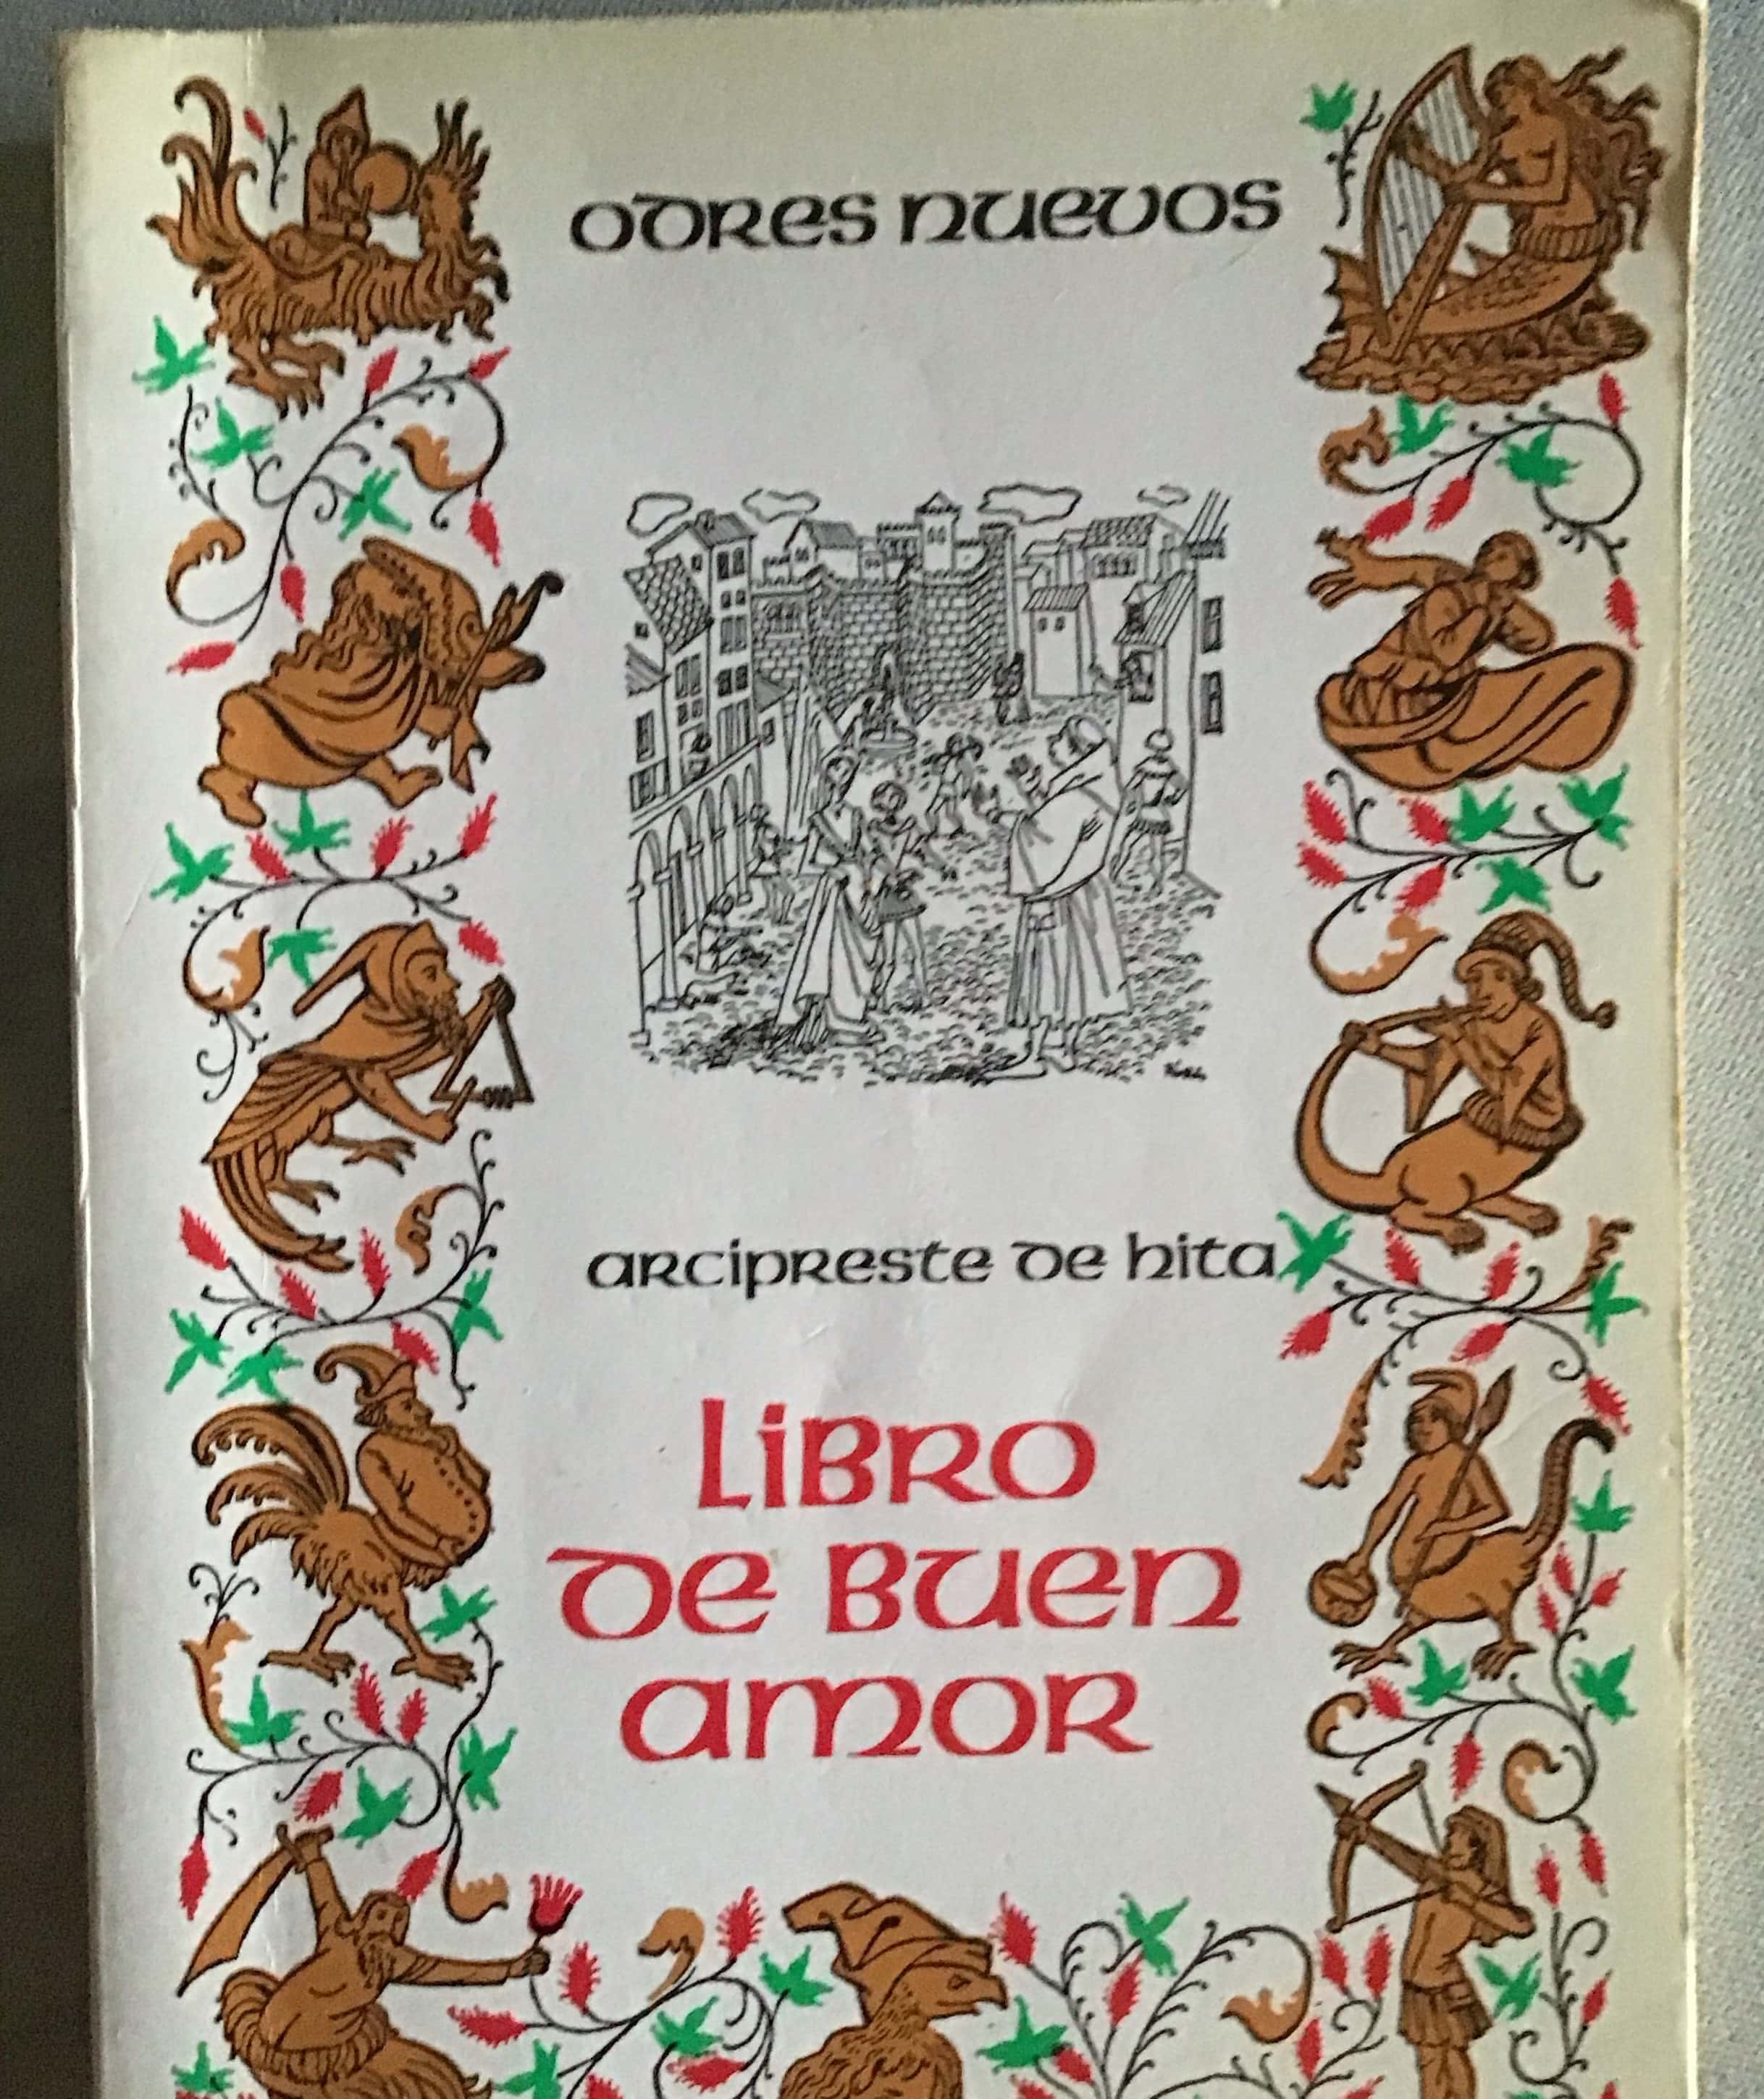 ¡Descubre el tesoro literario medieval que está conquistando corazones! El Libro de Buen Amor: Un viaje cautivador a la España del siglo XIV.